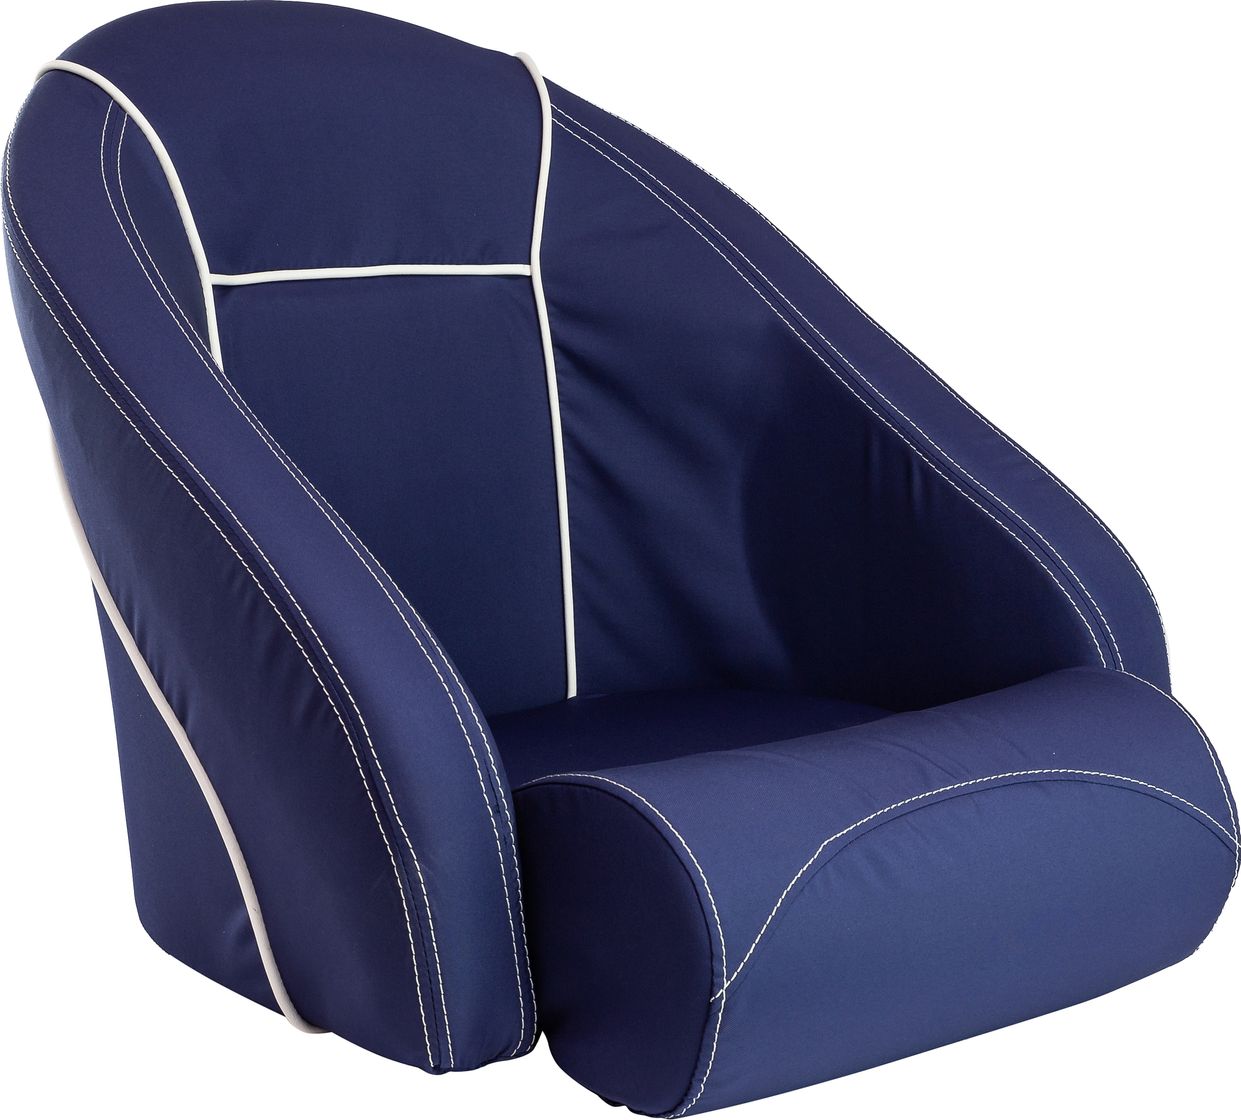 Кресло ROMEO мягкое, подставка, обивка ткань Markilux темно-синяя 118100395 кресло royalita мягкое подставка обивка ткань markilux темно синяя 570000395